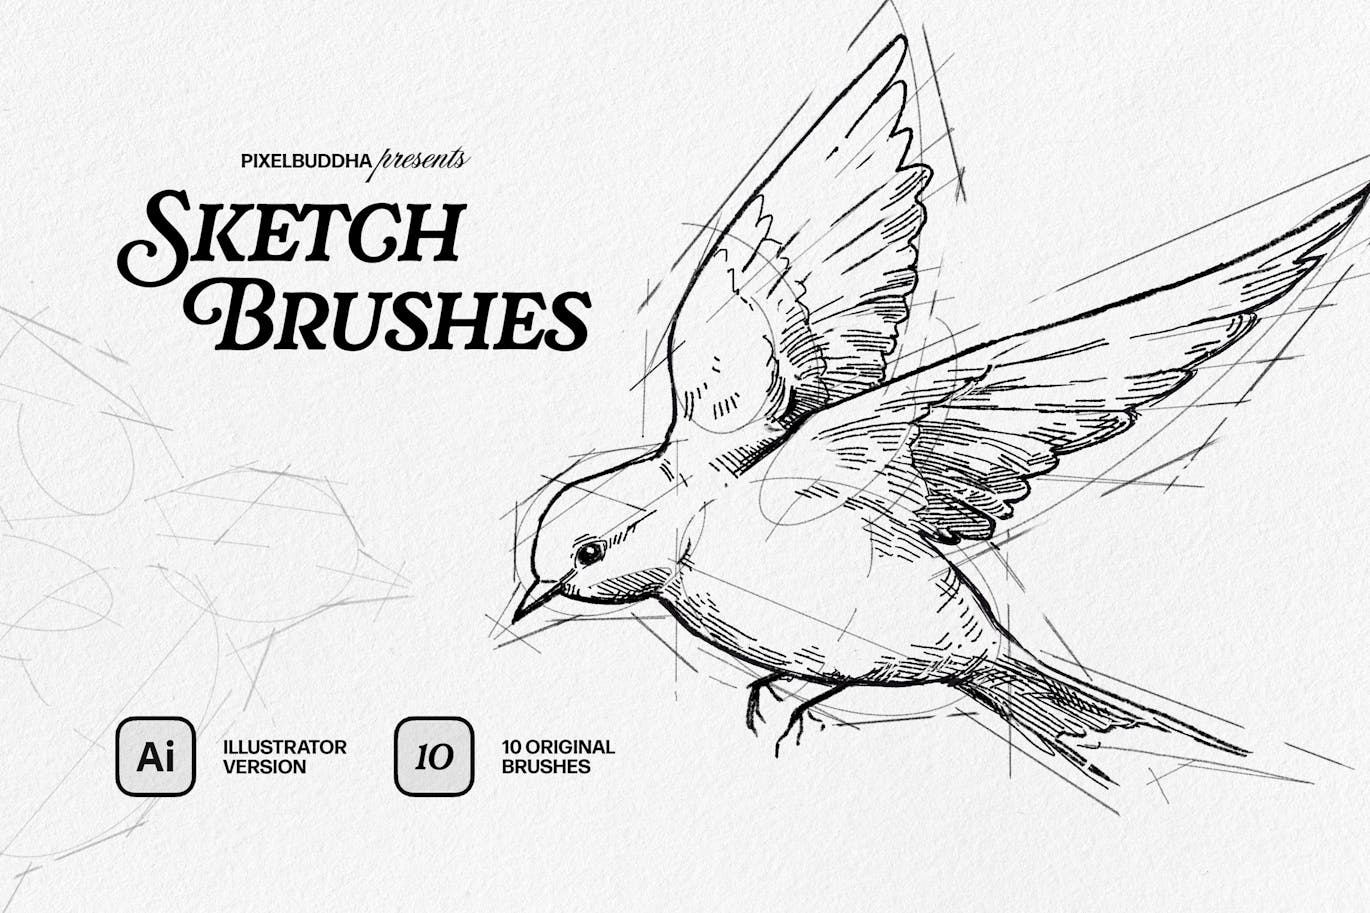 真实的素描画笔 SKETCHER-Sketch Brushes for Photoshop and Illustrator